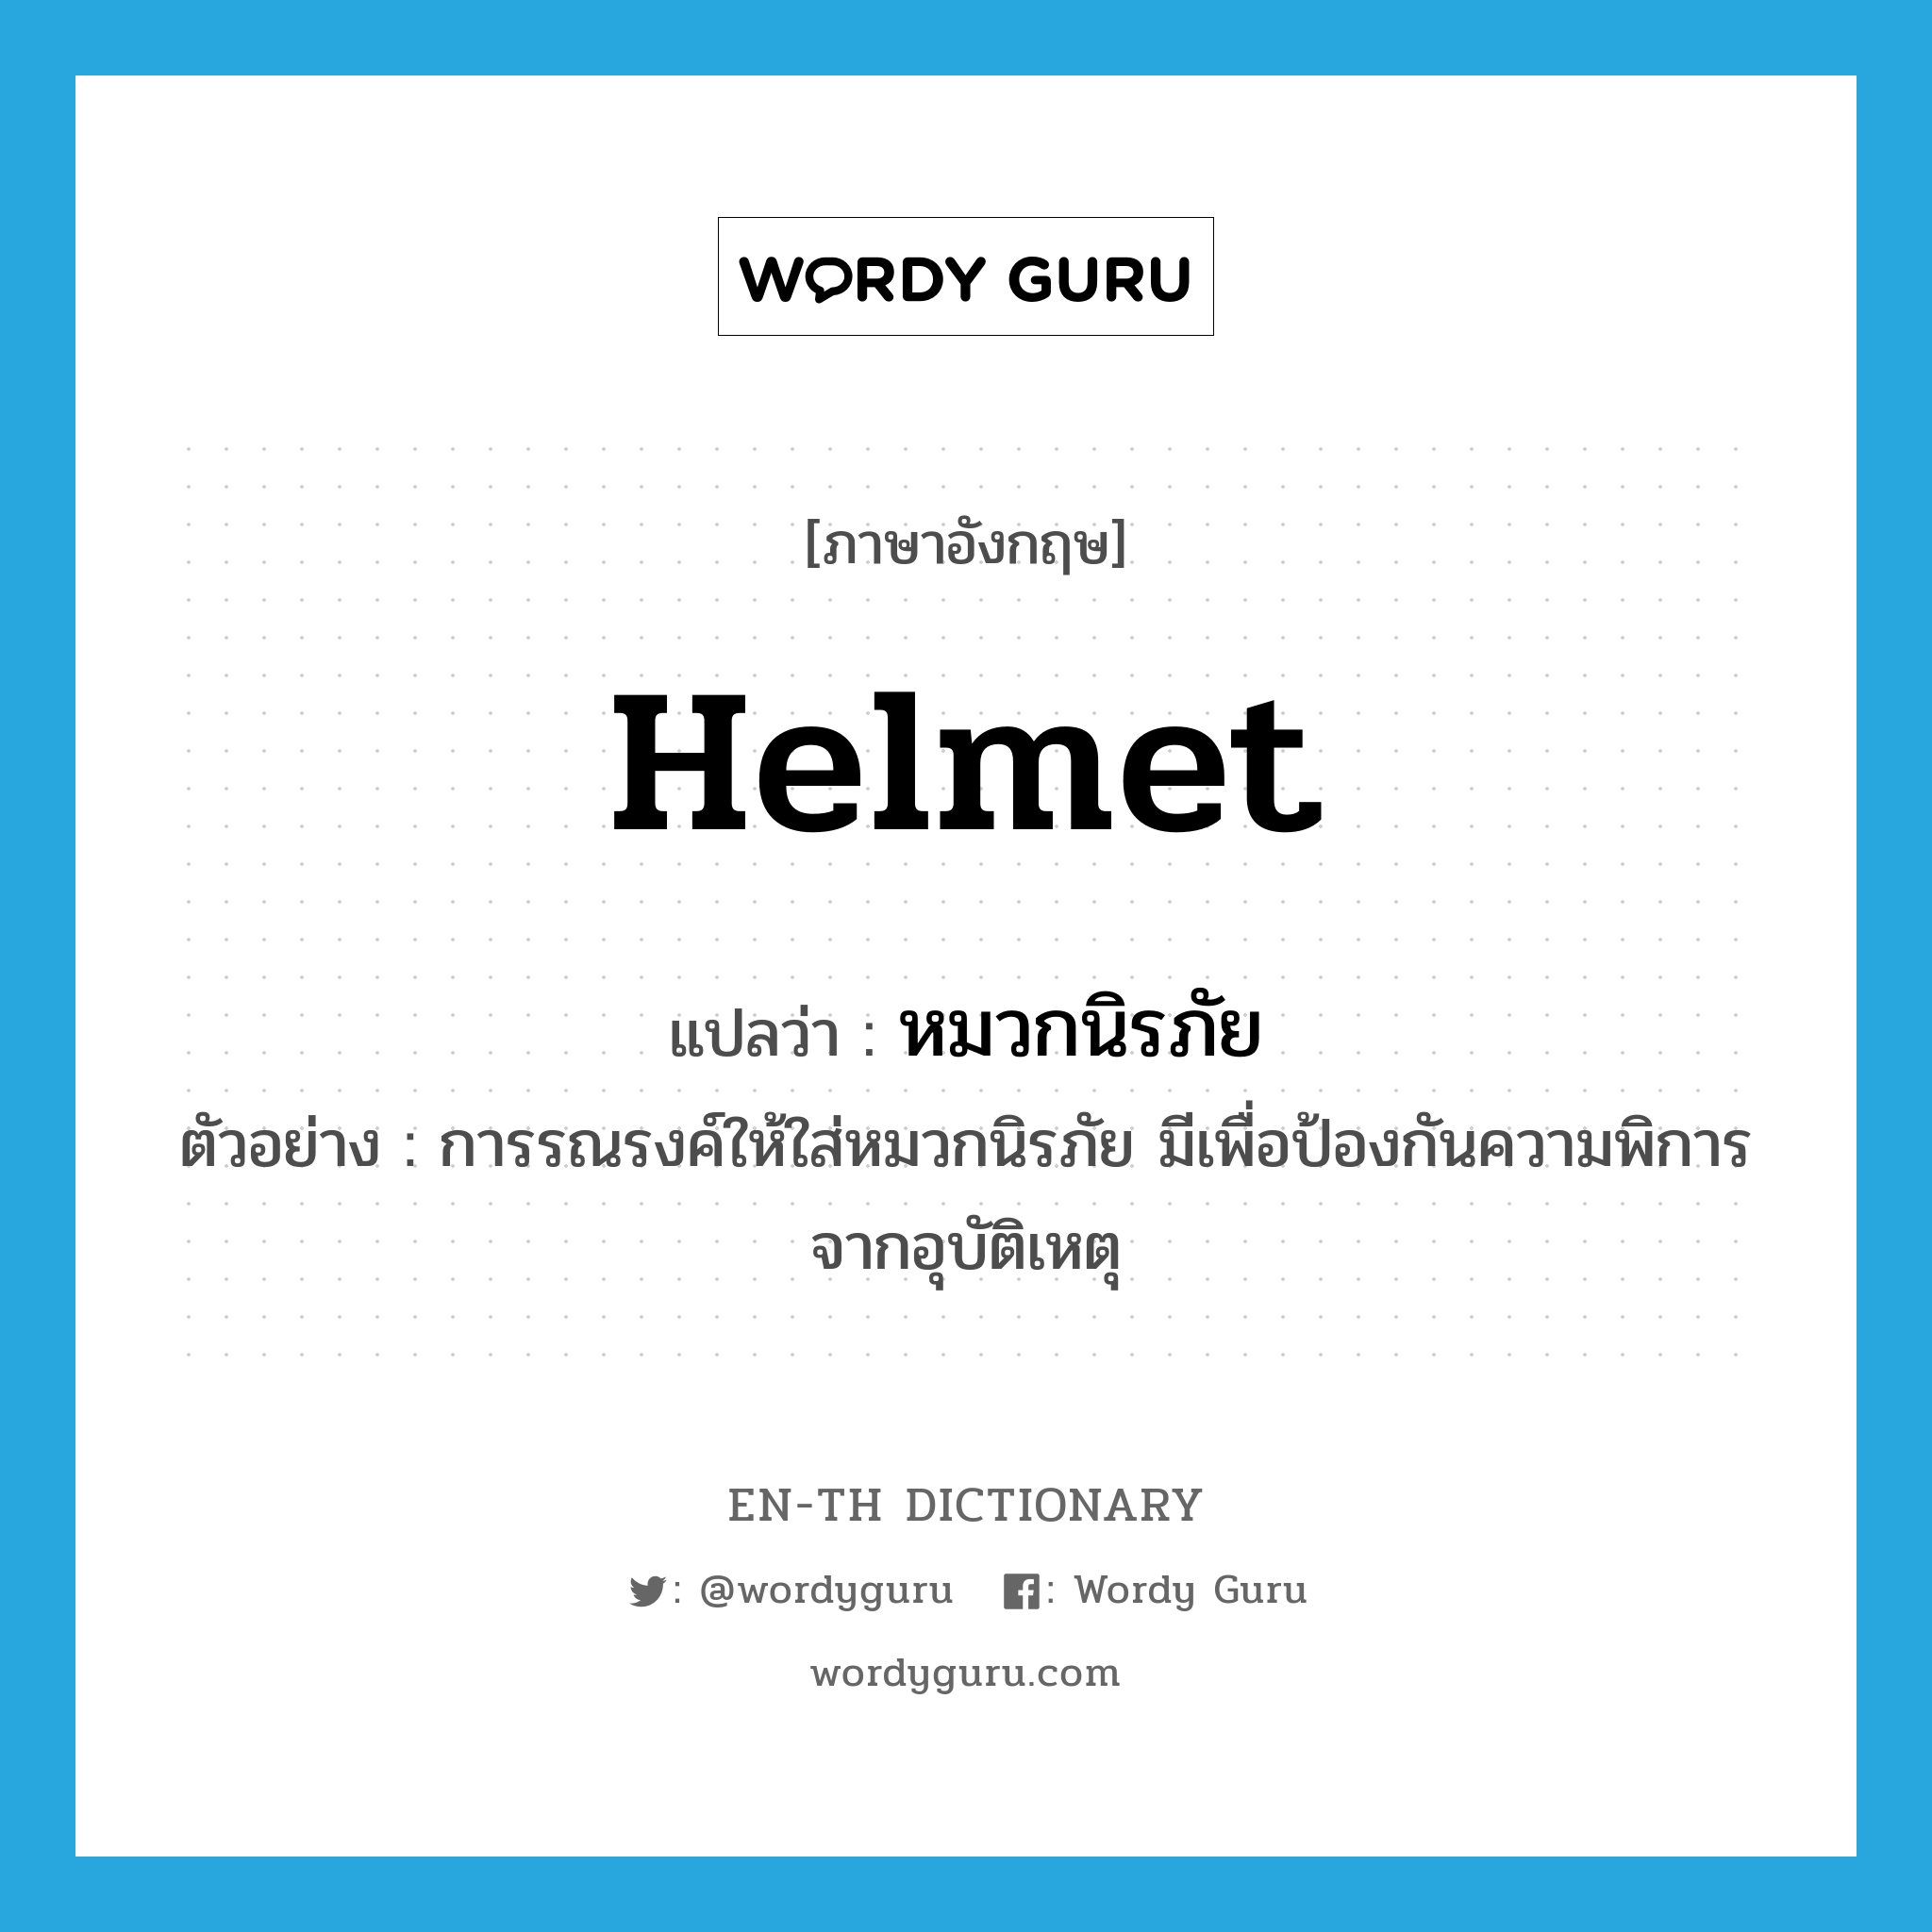 helmet แปลว่า?, คำศัพท์ภาษาอังกฤษ helmet แปลว่า หมวกนิรภัย ประเภท N ตัวอย่าง การรณรงค์ให้ใส่หมวกนิรภัย มีเพื่อป้องกันความพิการจากอุบัติเหตุ หมวด N